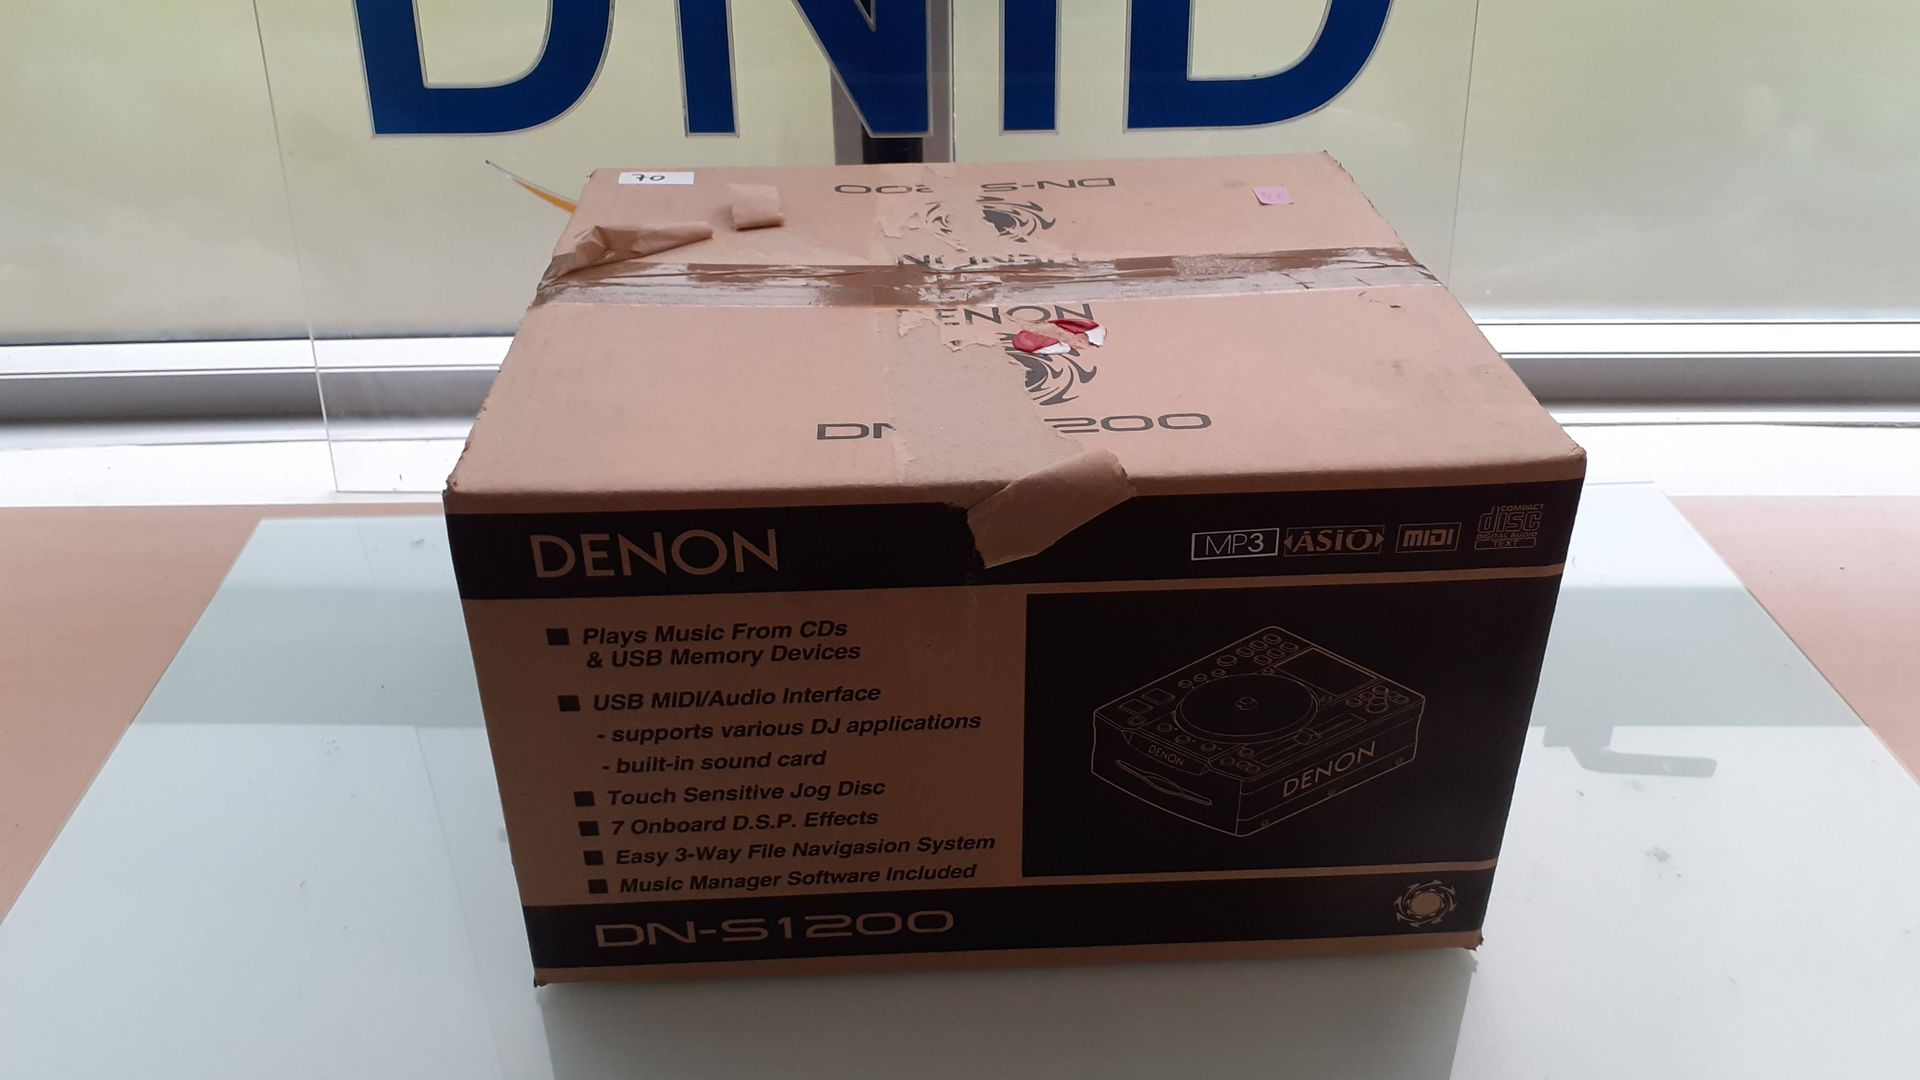 Null Platine DENON DN-S1200 dans sa boîte, jamais utilisée.

Lieu de dépôt : MAG&hellip;